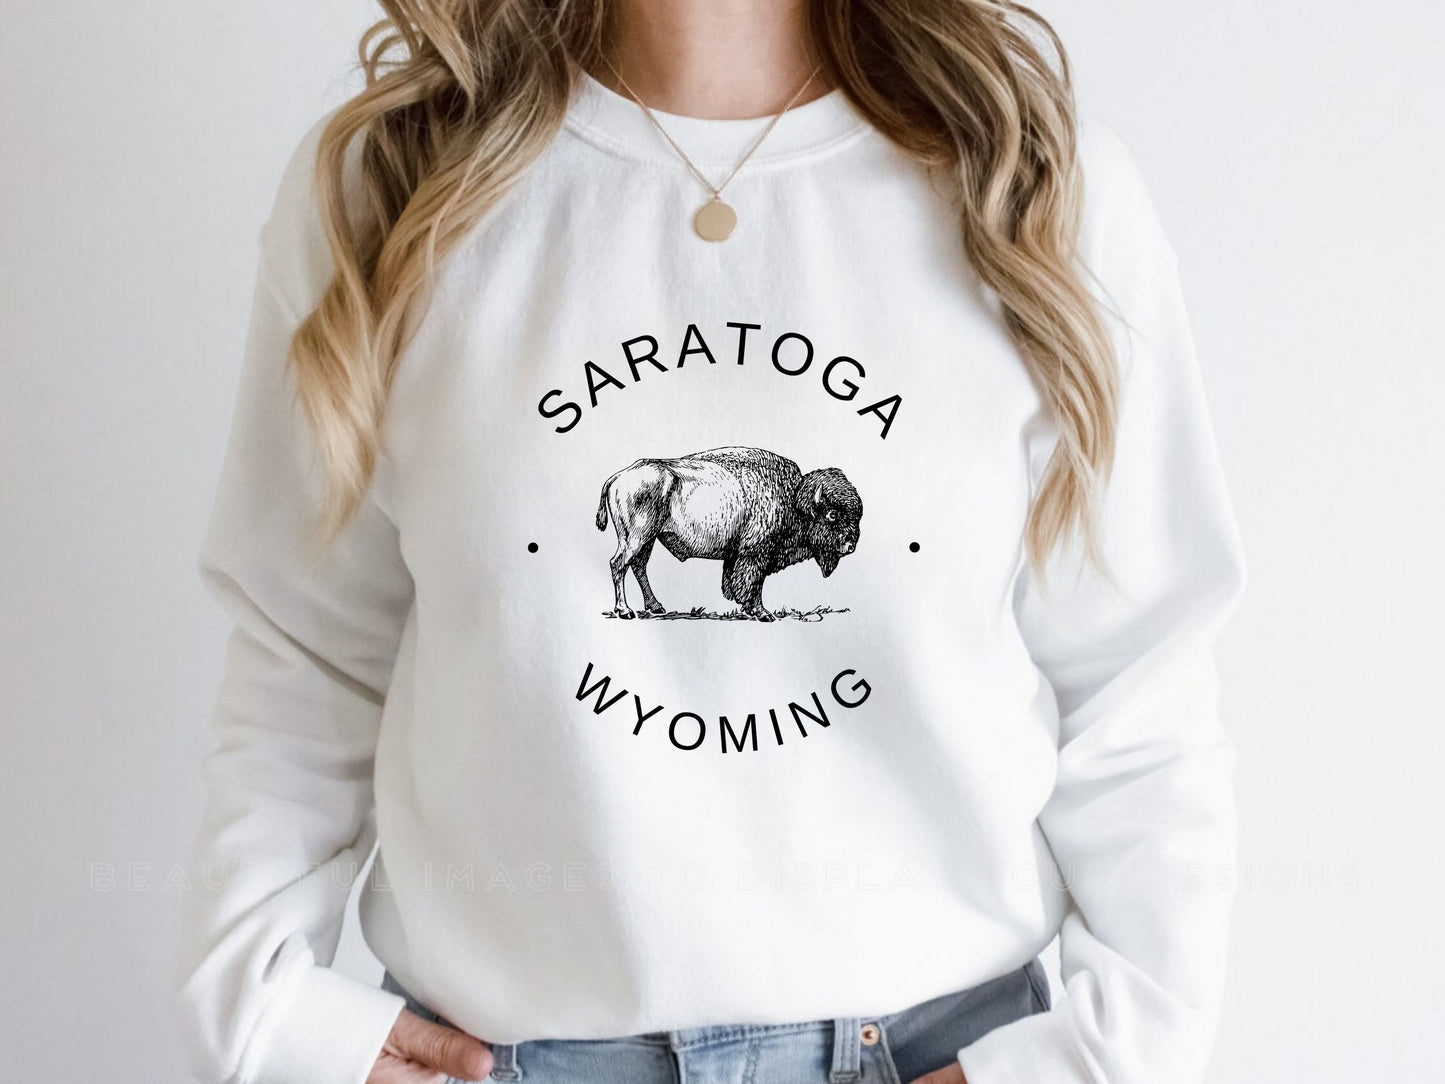 Saratoga Women Wyoming Sweatshirt